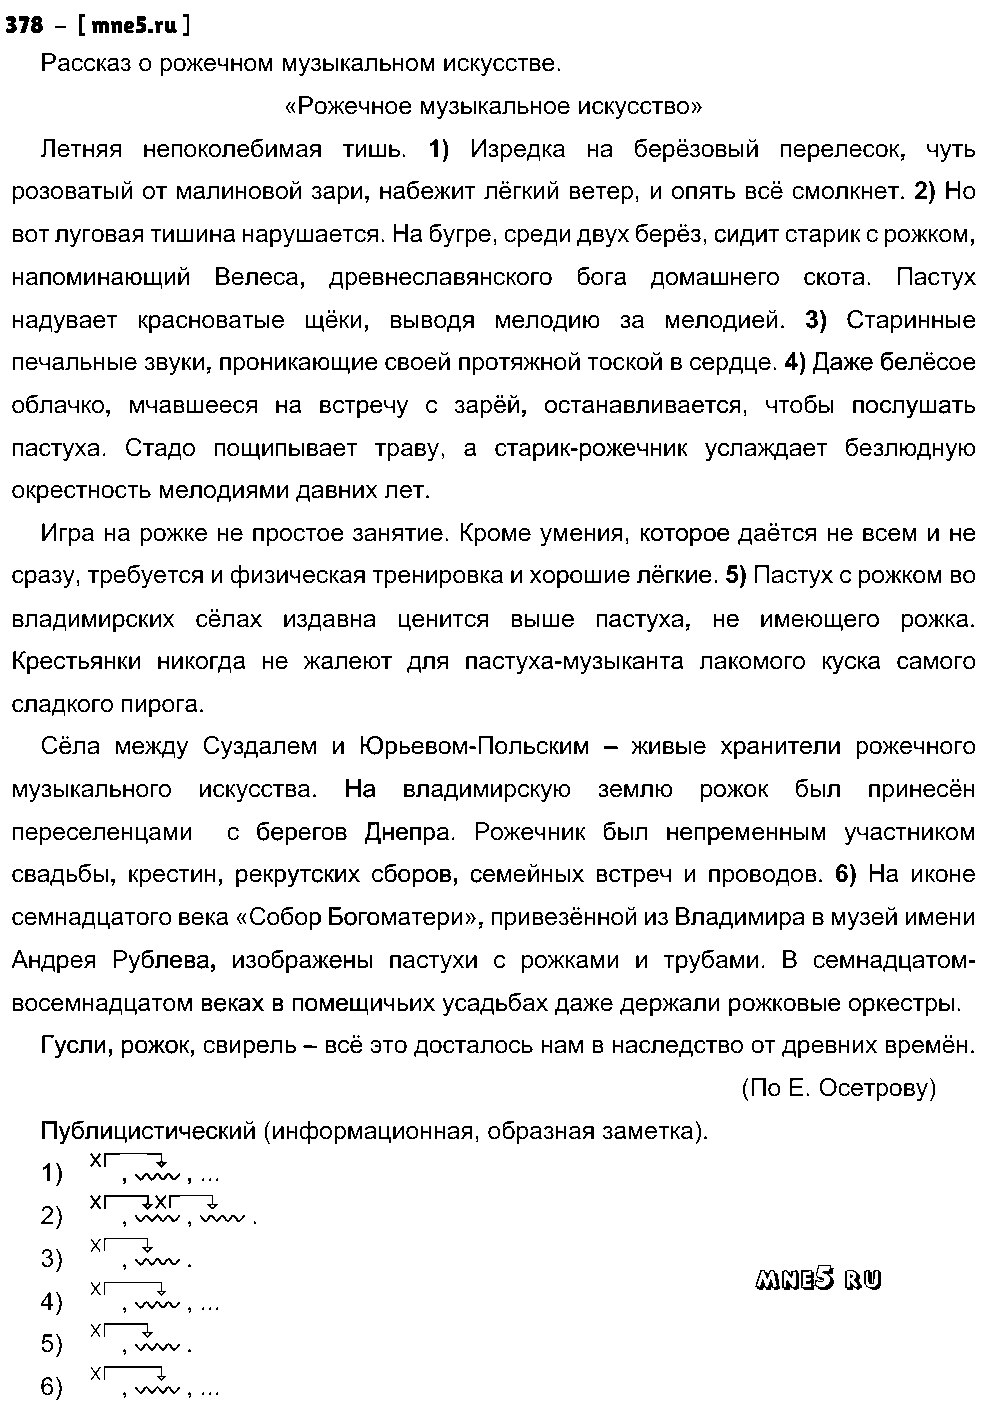 ГДЗ Русский язык 8 класс - 378